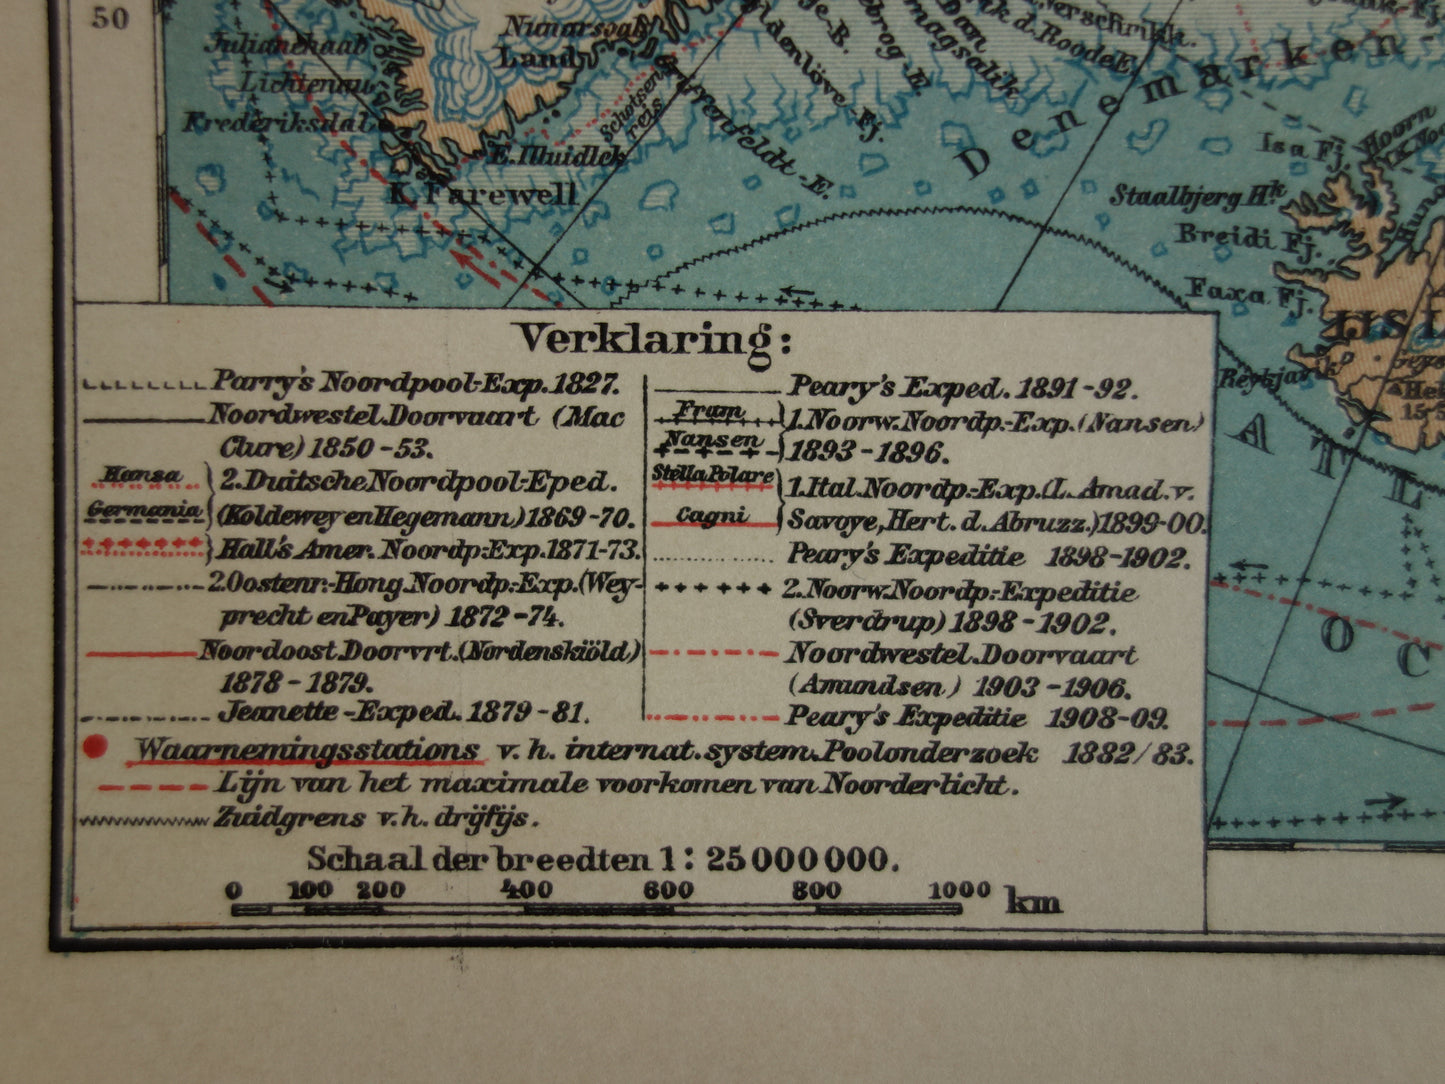 Oude kaart van de Noordpool 1910 originele antieke Nederlandse landkaart Groenland Spitsbergen